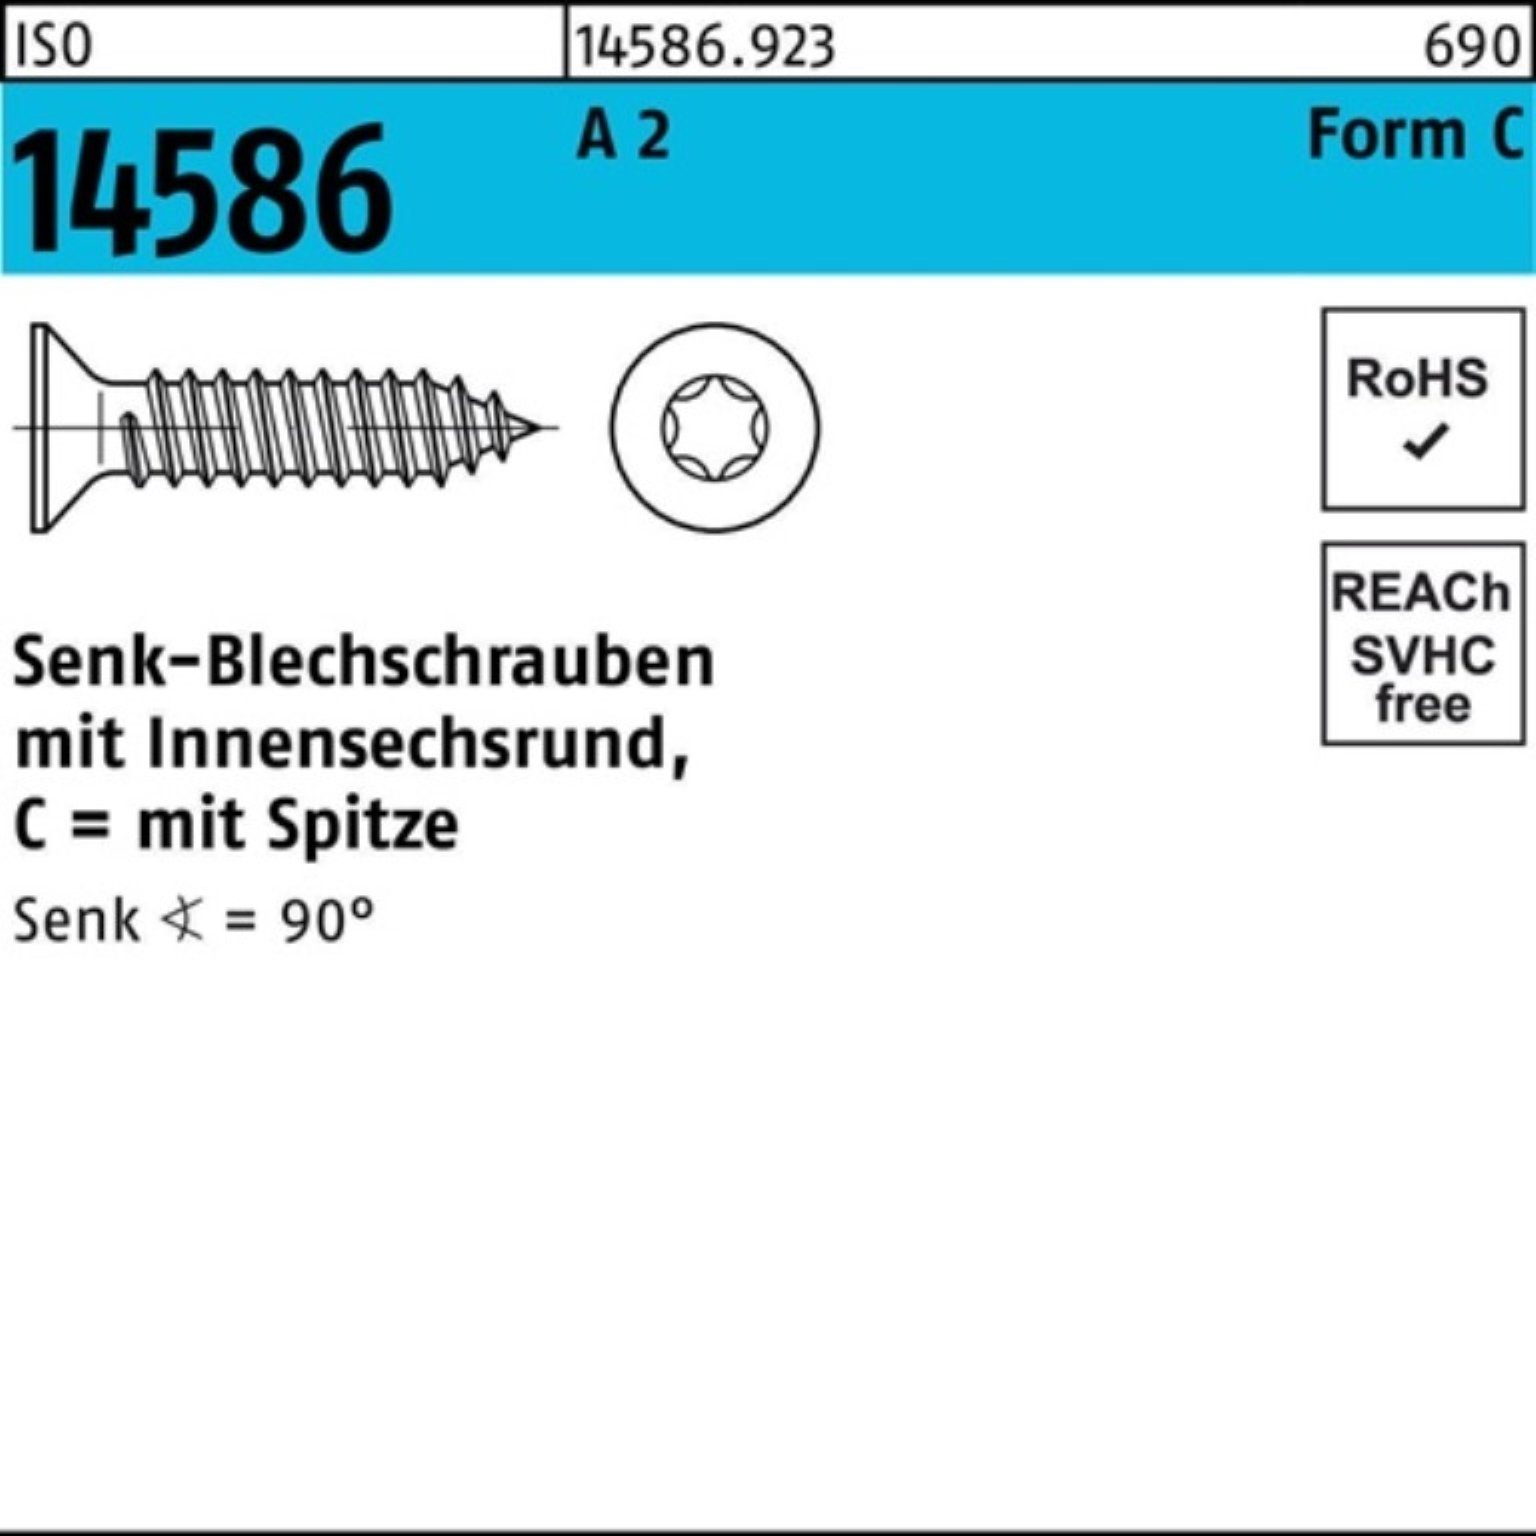 Reyher Schraube 500er 5 A ISR/Spitze ISO T30 2 14586 Senkblechschraube -C Pack 22 6,3x